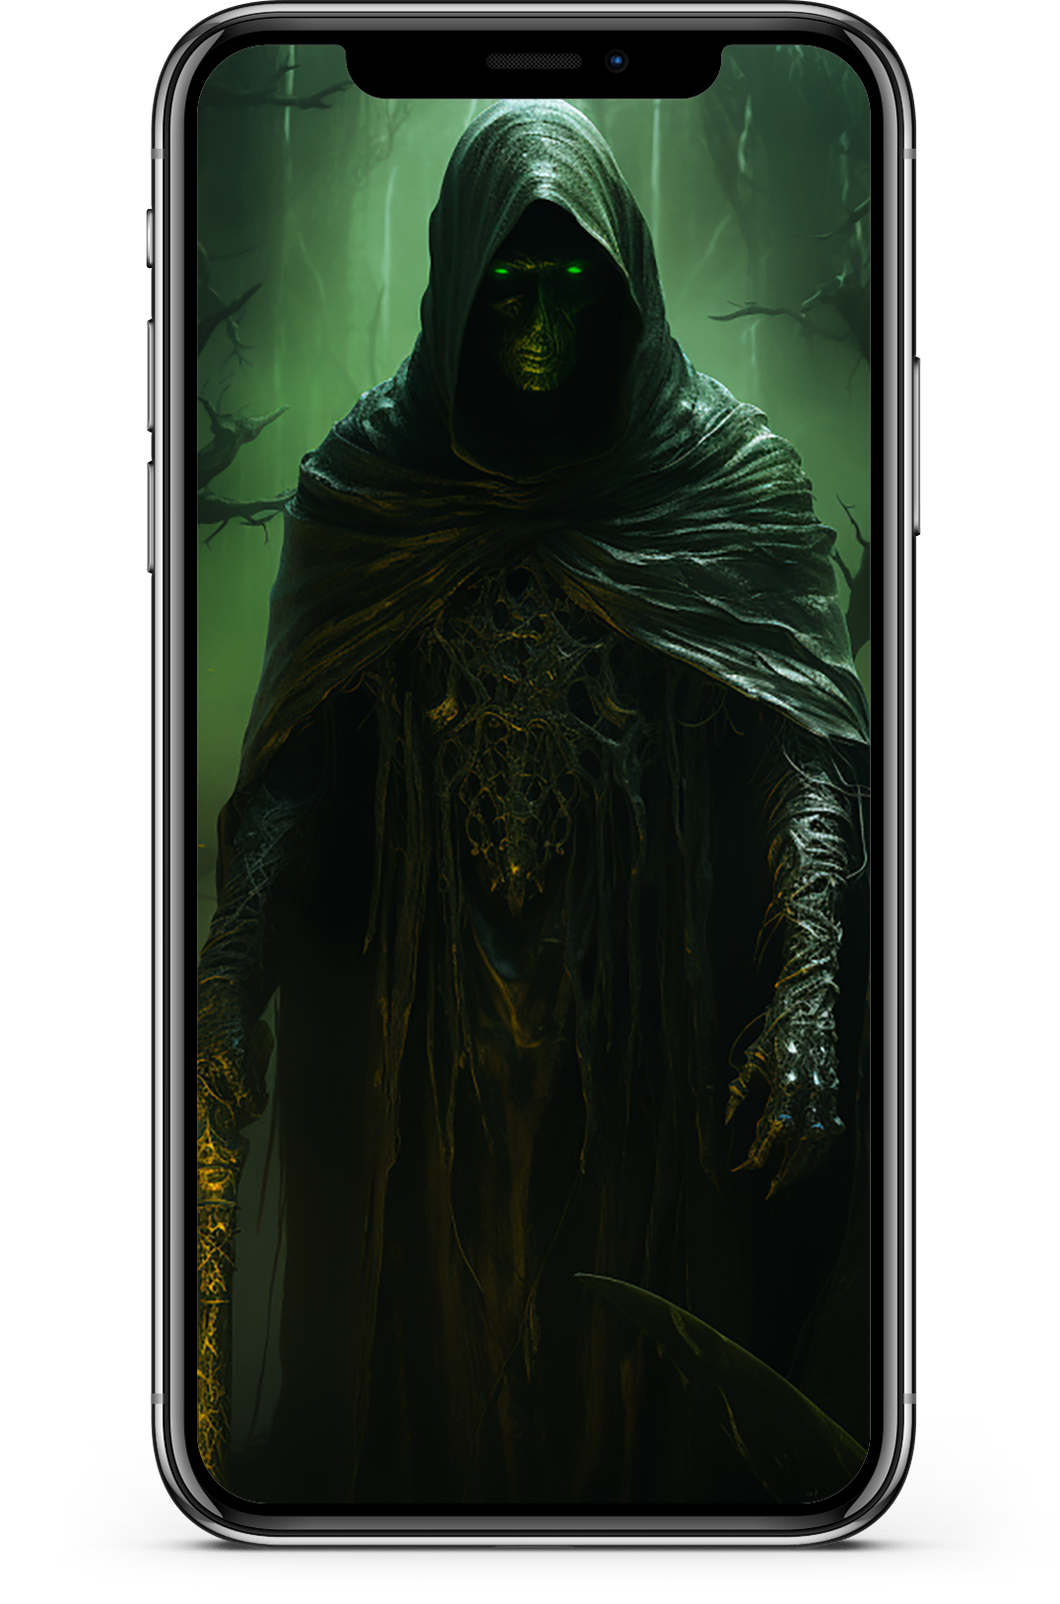 Grim Reaper - FREE Iphone Wallpaper